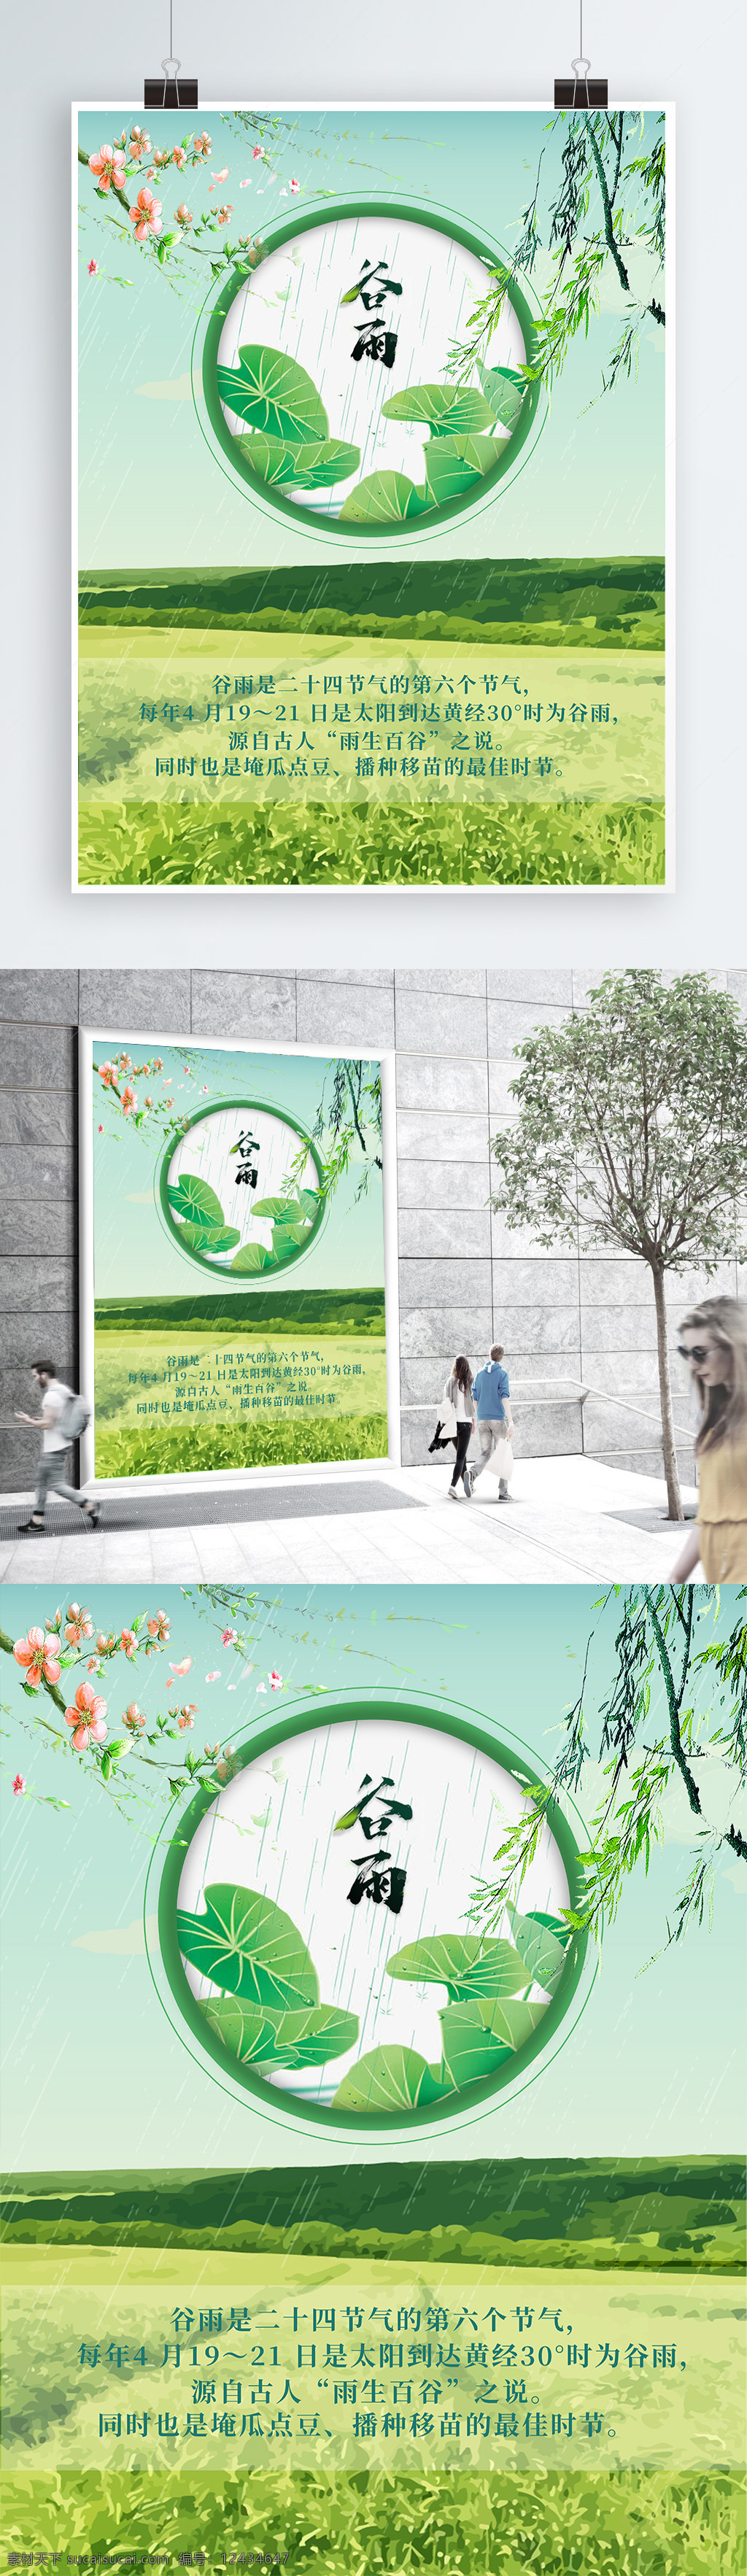 2018 传统 节气 谷雨 荷叶 海报 印刷 展示 青春绿 柳枝 春天气息 二十四节气